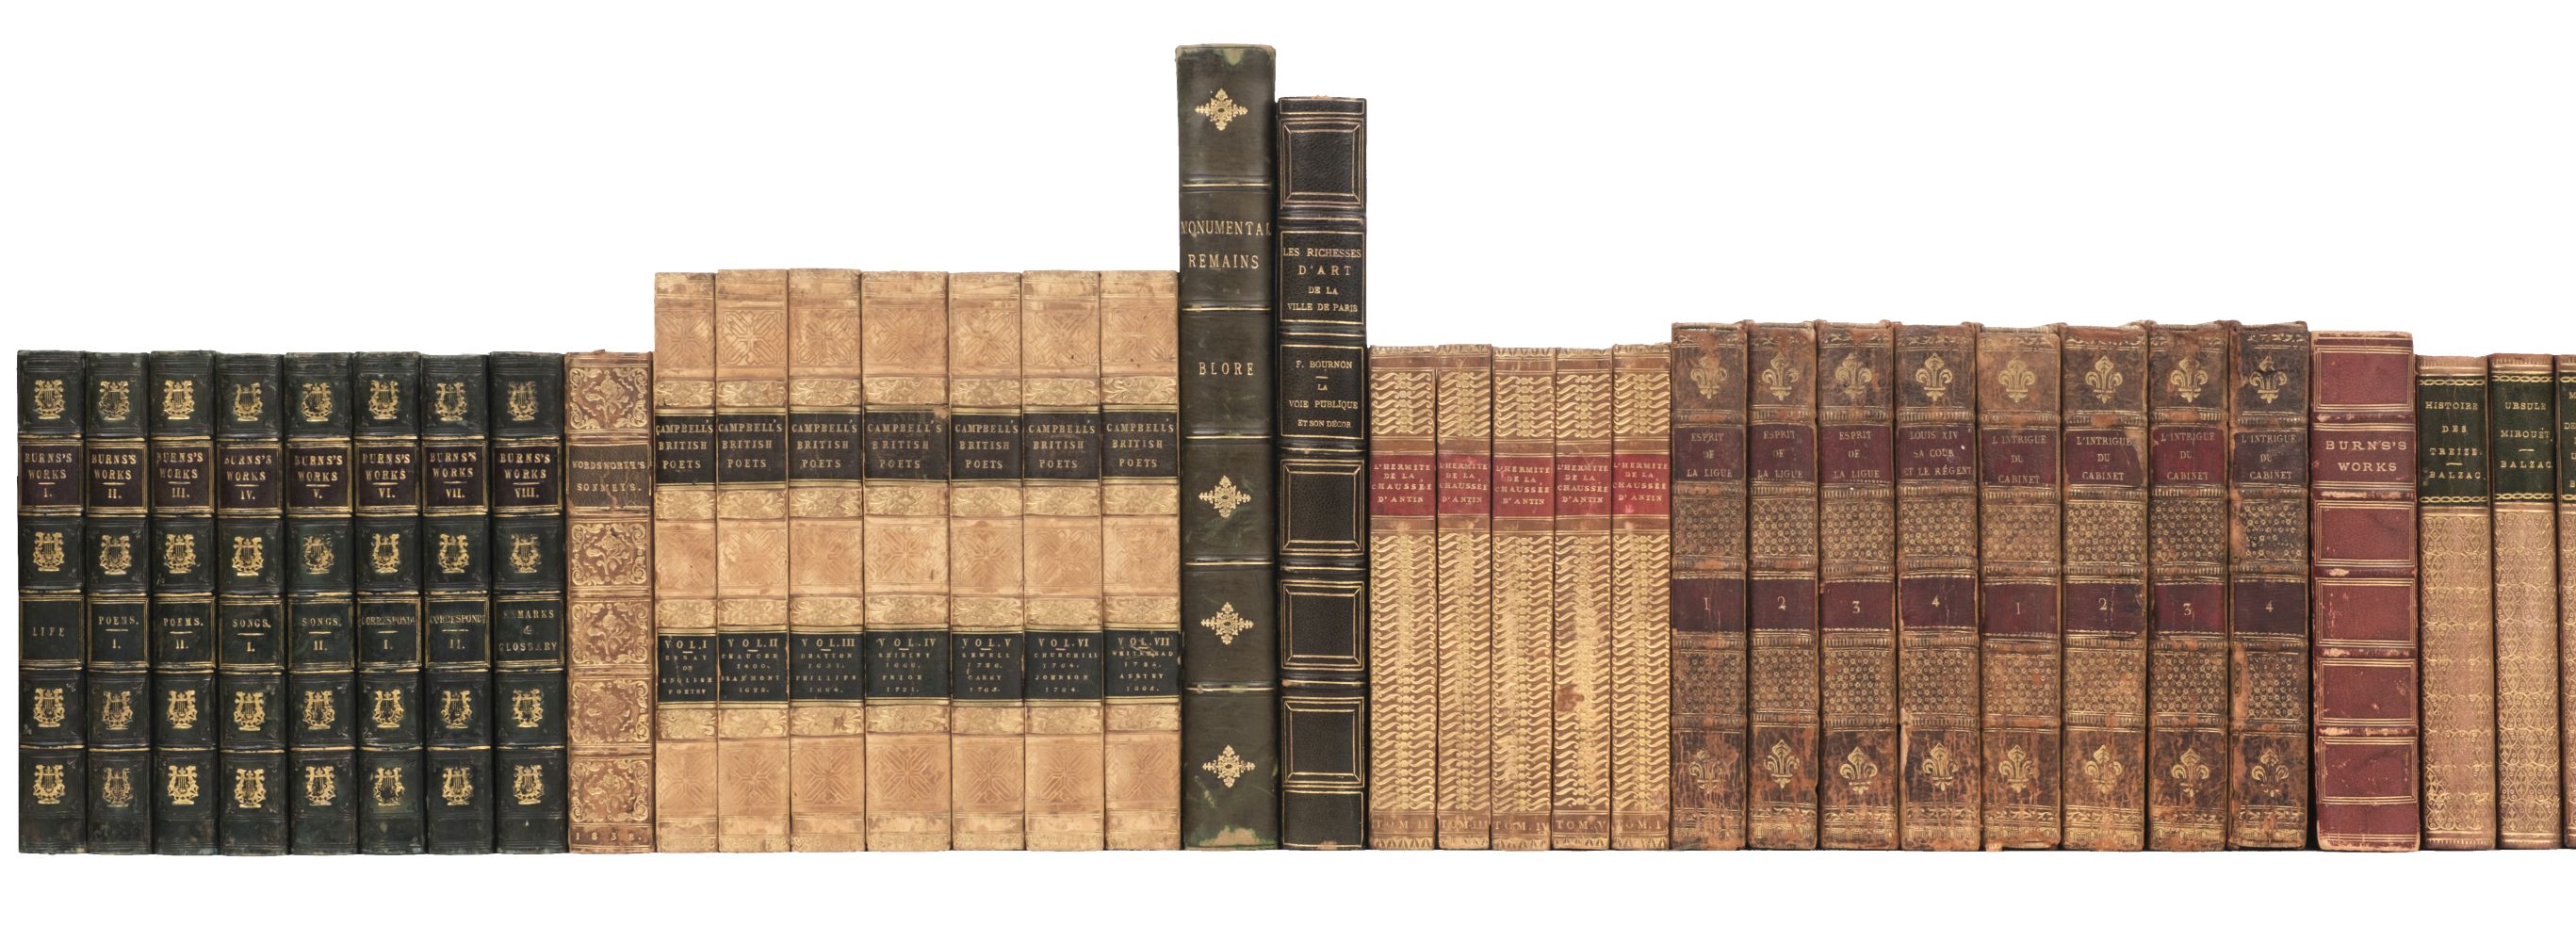 Burns (Robert). The Works, 8 vols., 1834